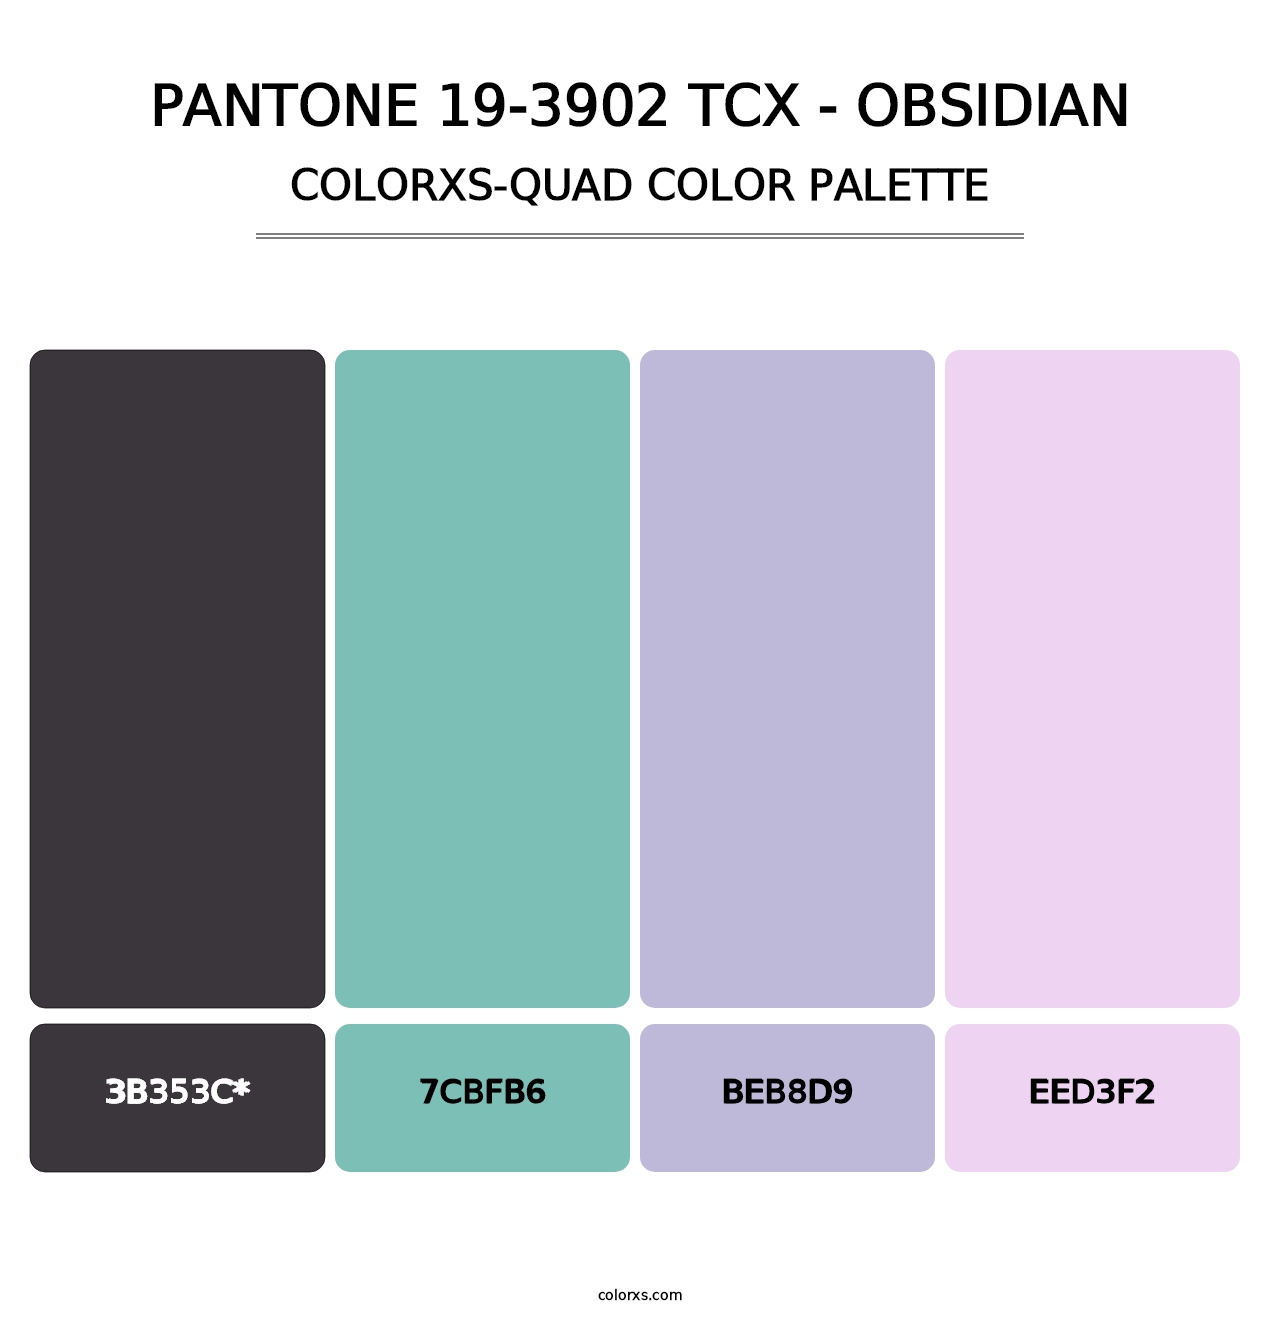 PANTONE 19-3902 TCX - Obsidian - Colorxs Quad Palette